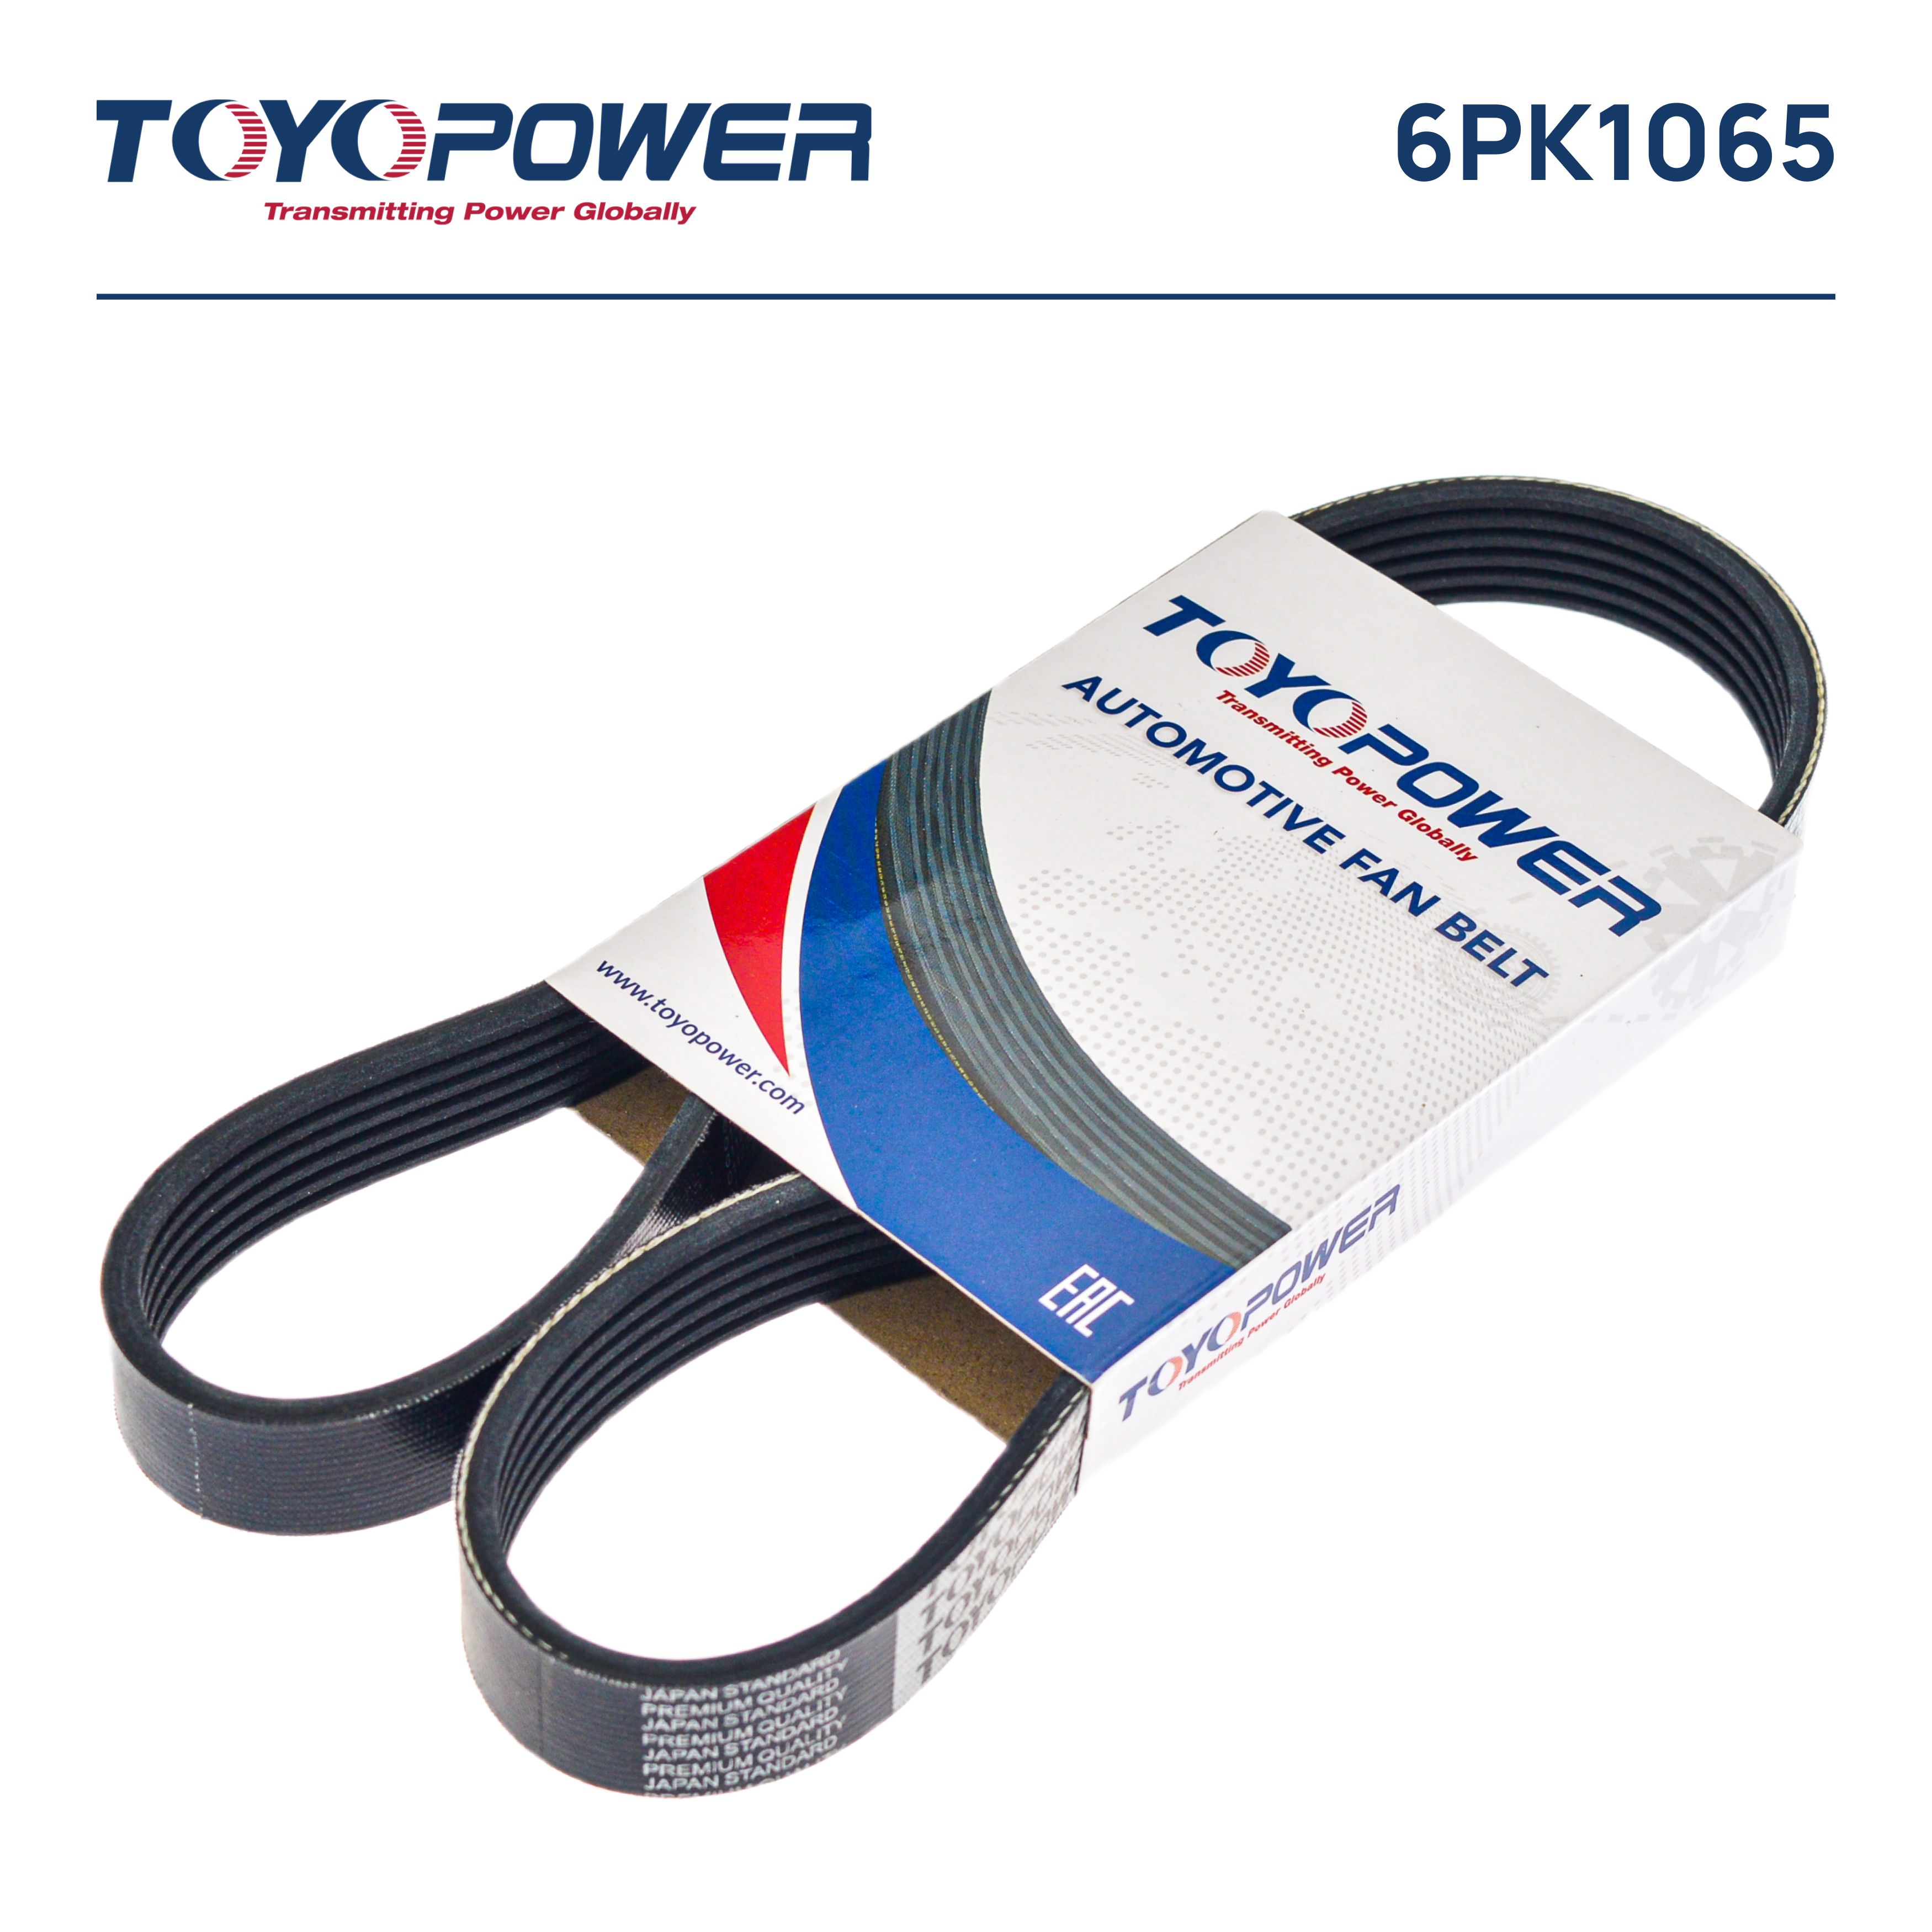 Ремень поликлиновый - Toyopower 6PK1065